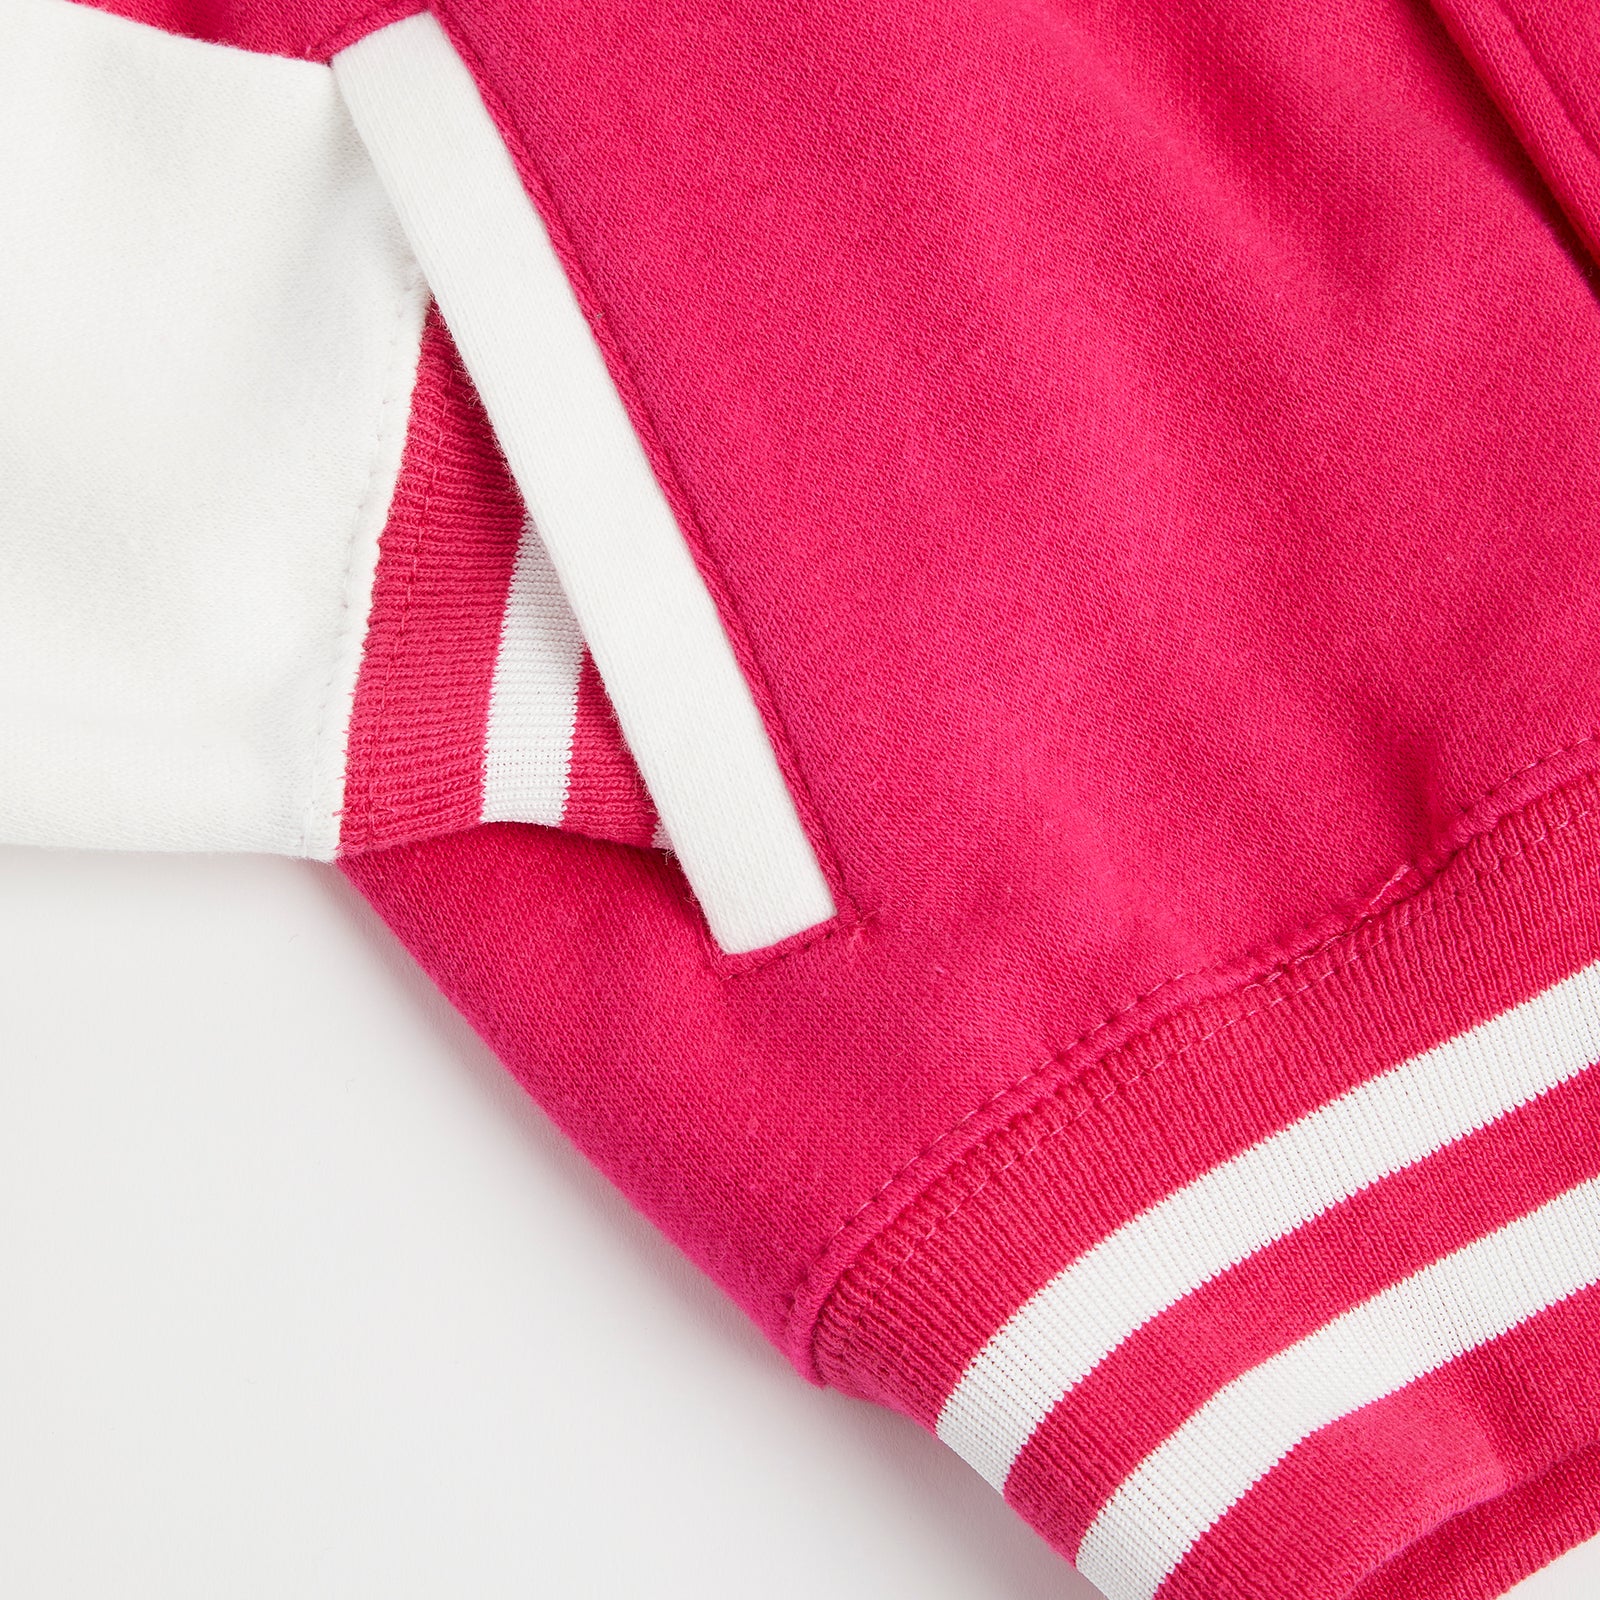 Alphabet Pink Varsity Jacket